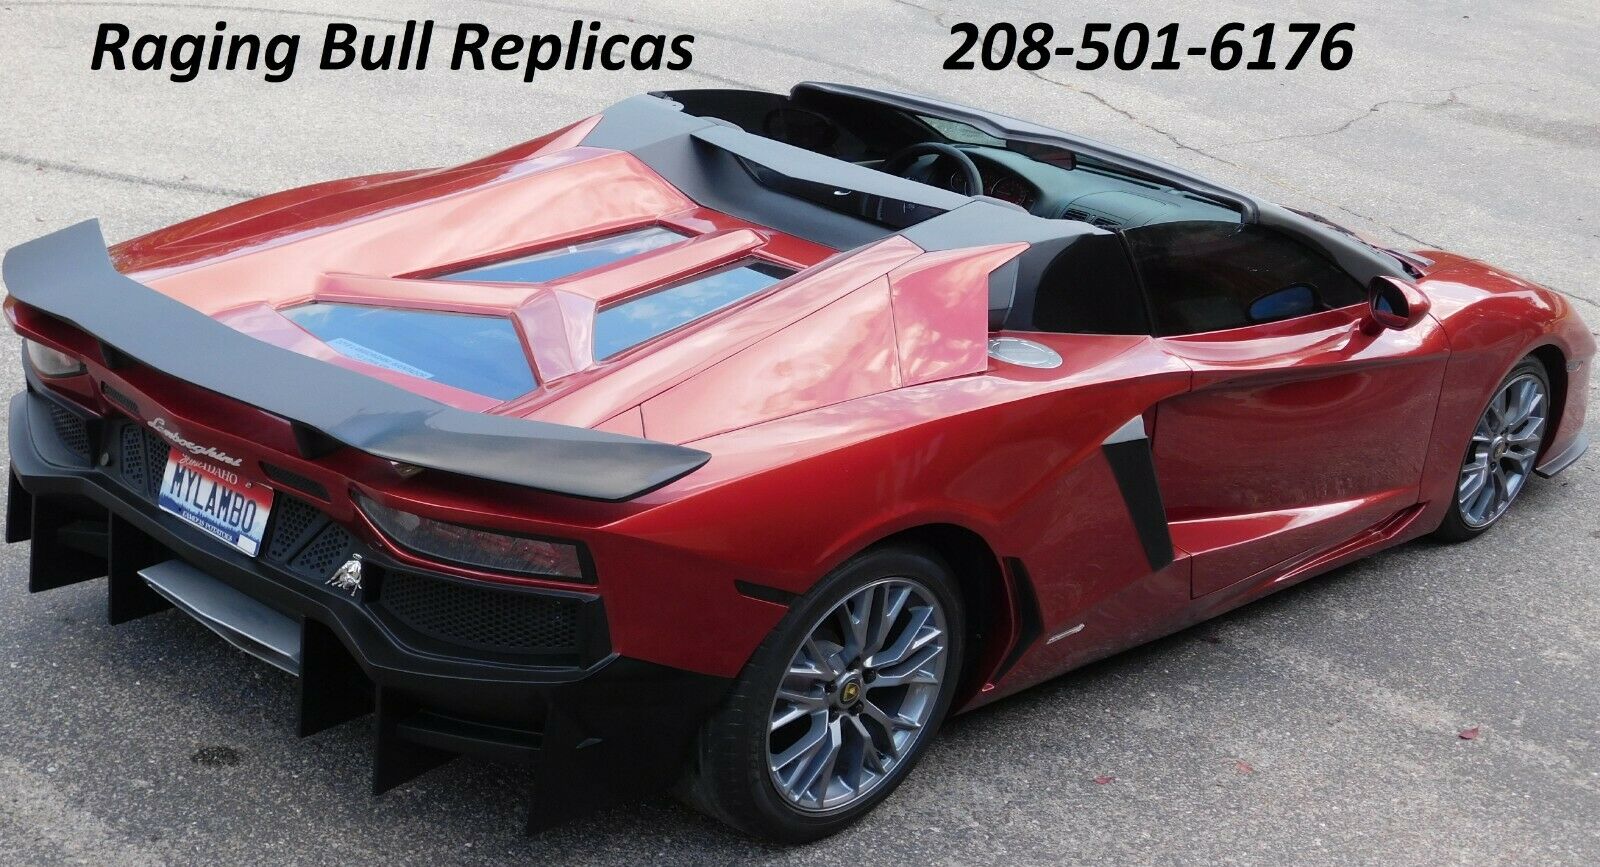 Lamborghini Aventador fake rao bán với giá chưa đến 1 tỷ đồng